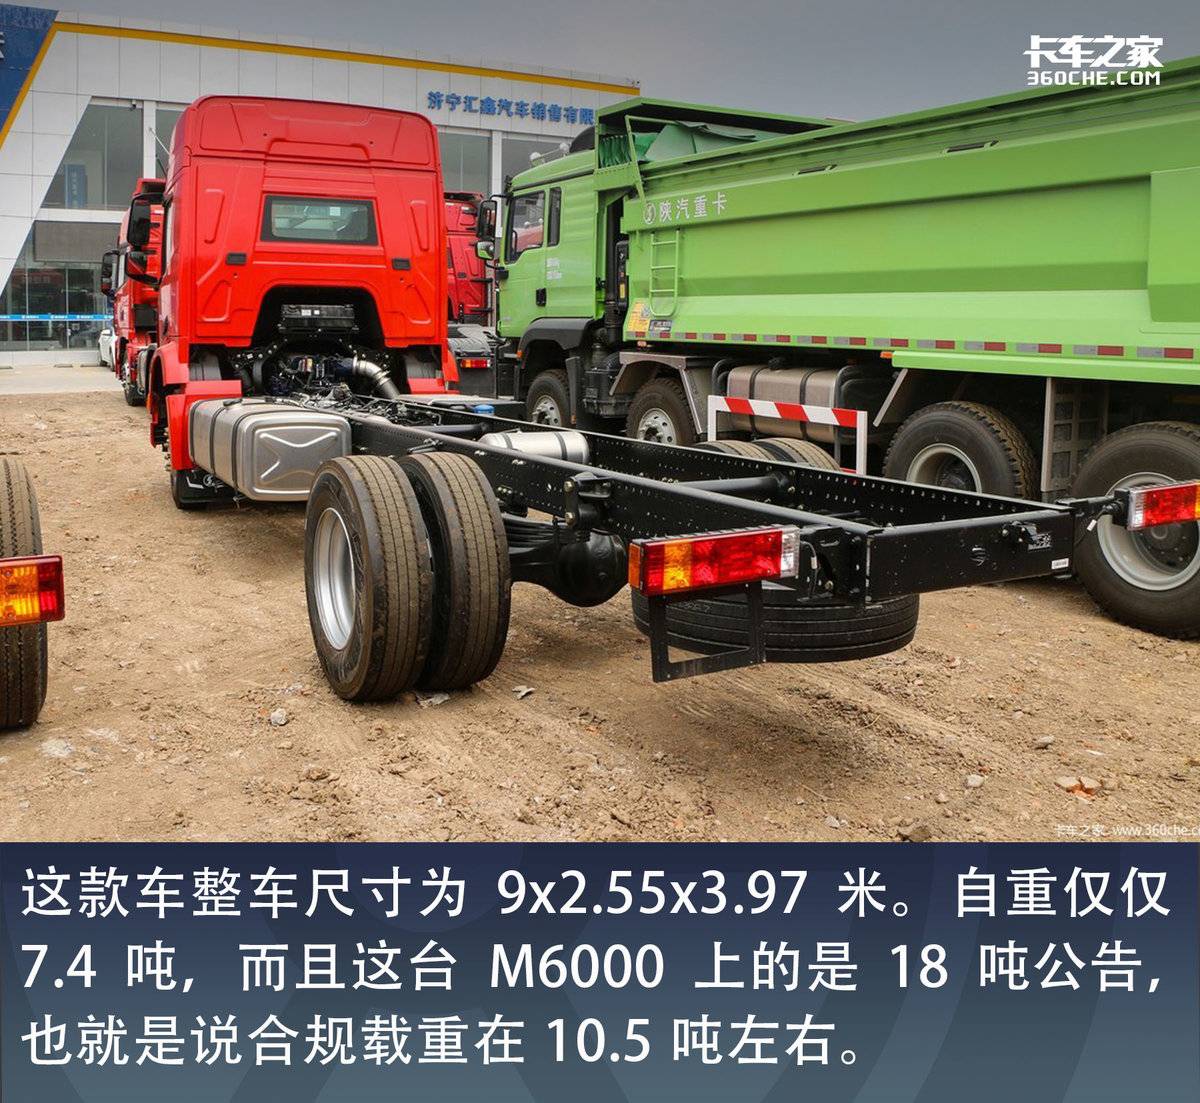 合规能拉10吨多 陕汽6000系列的6.8米载货车来了